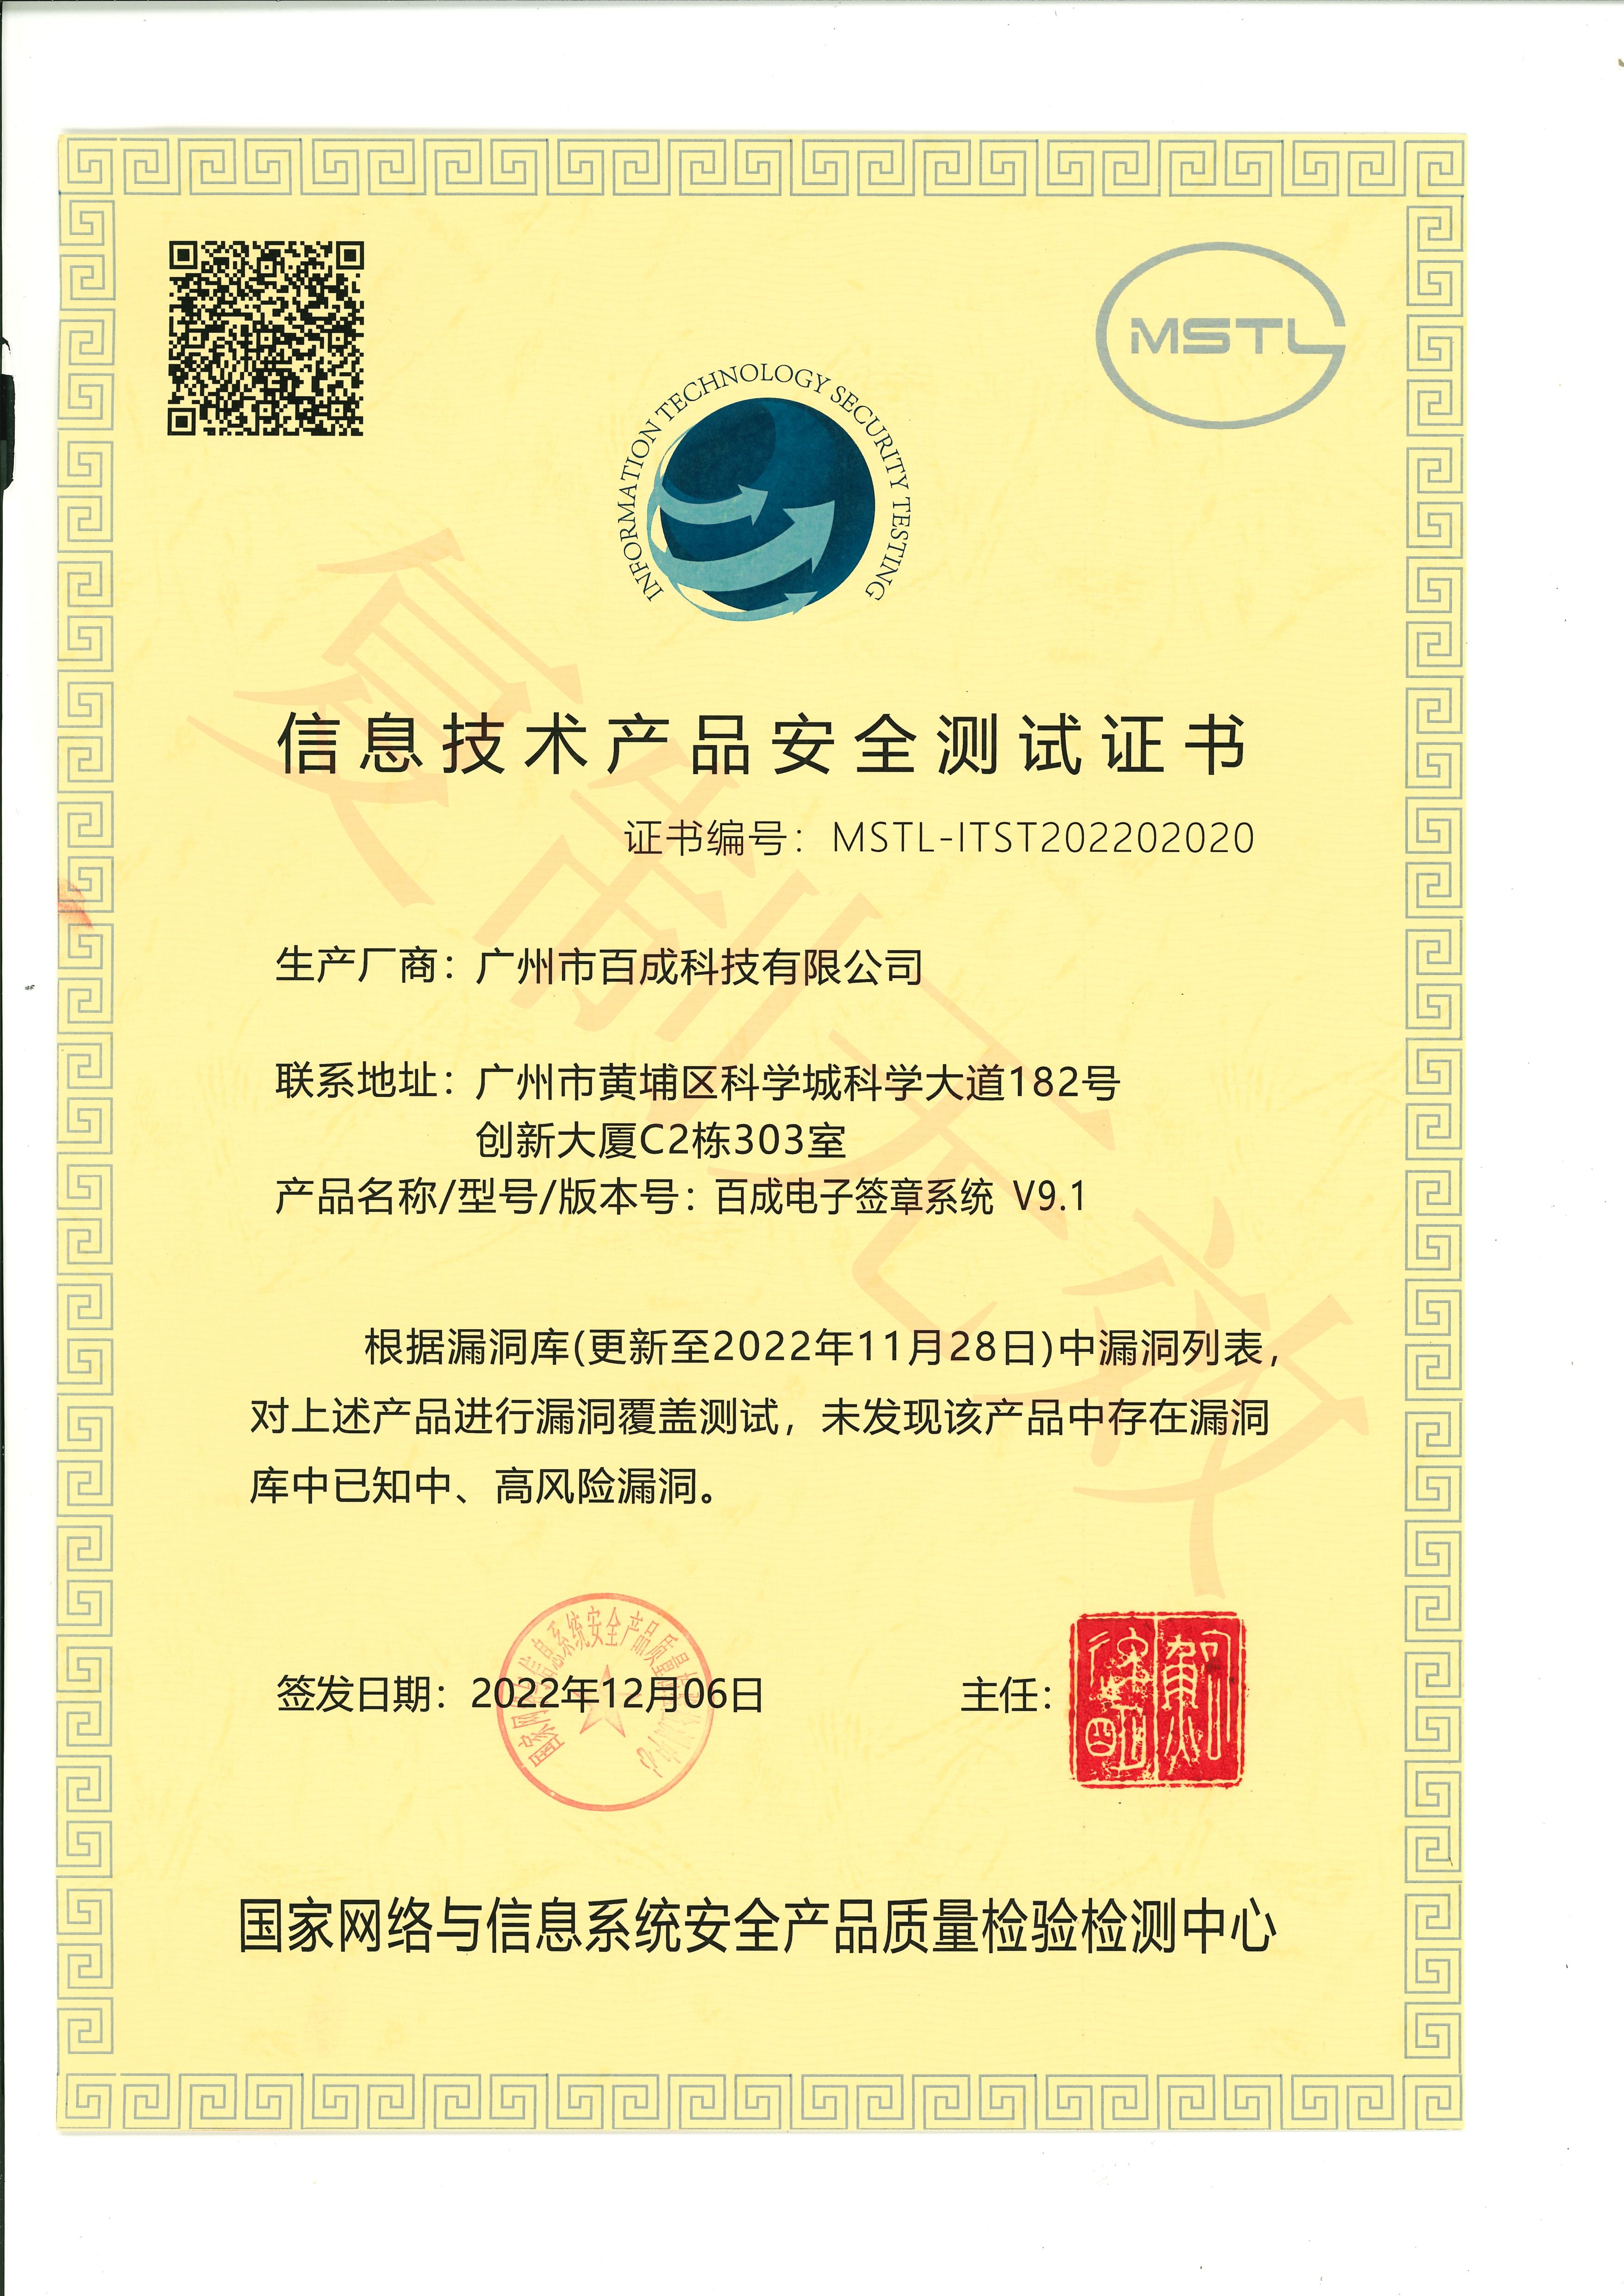 百成电子签章系统V9.1-信息技术产品安全测试证书